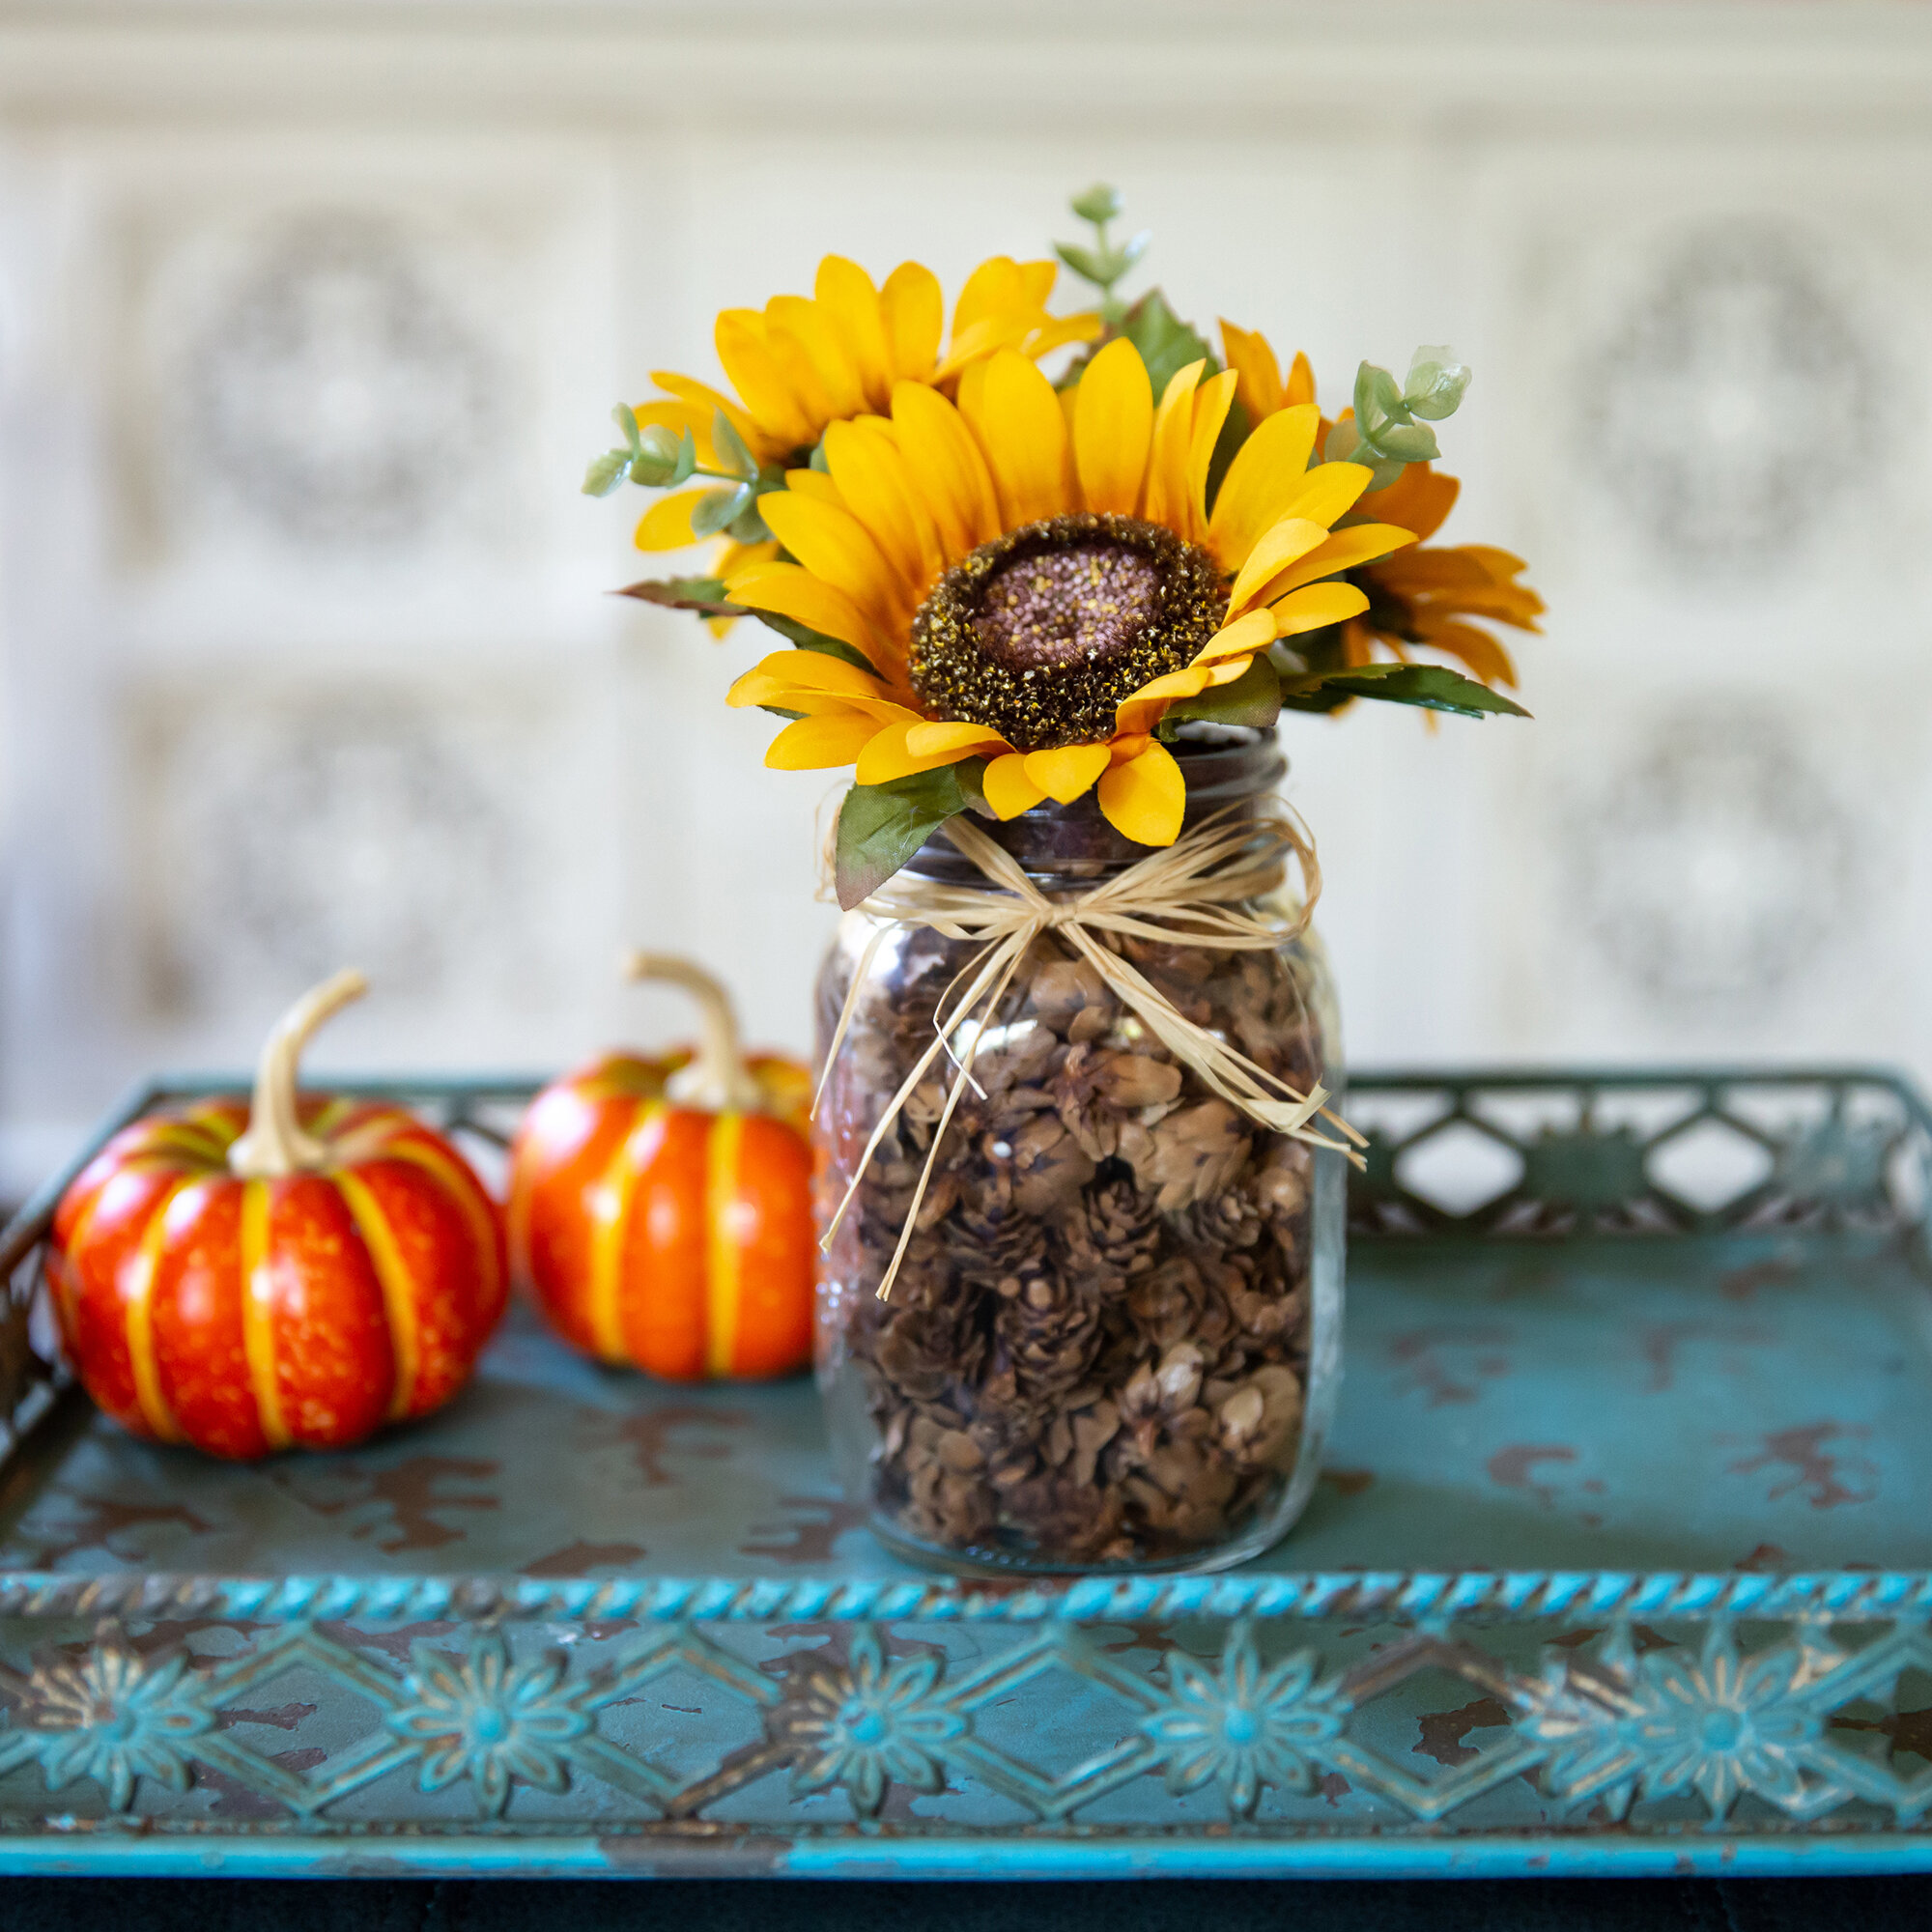 Sunflower Mason Jar